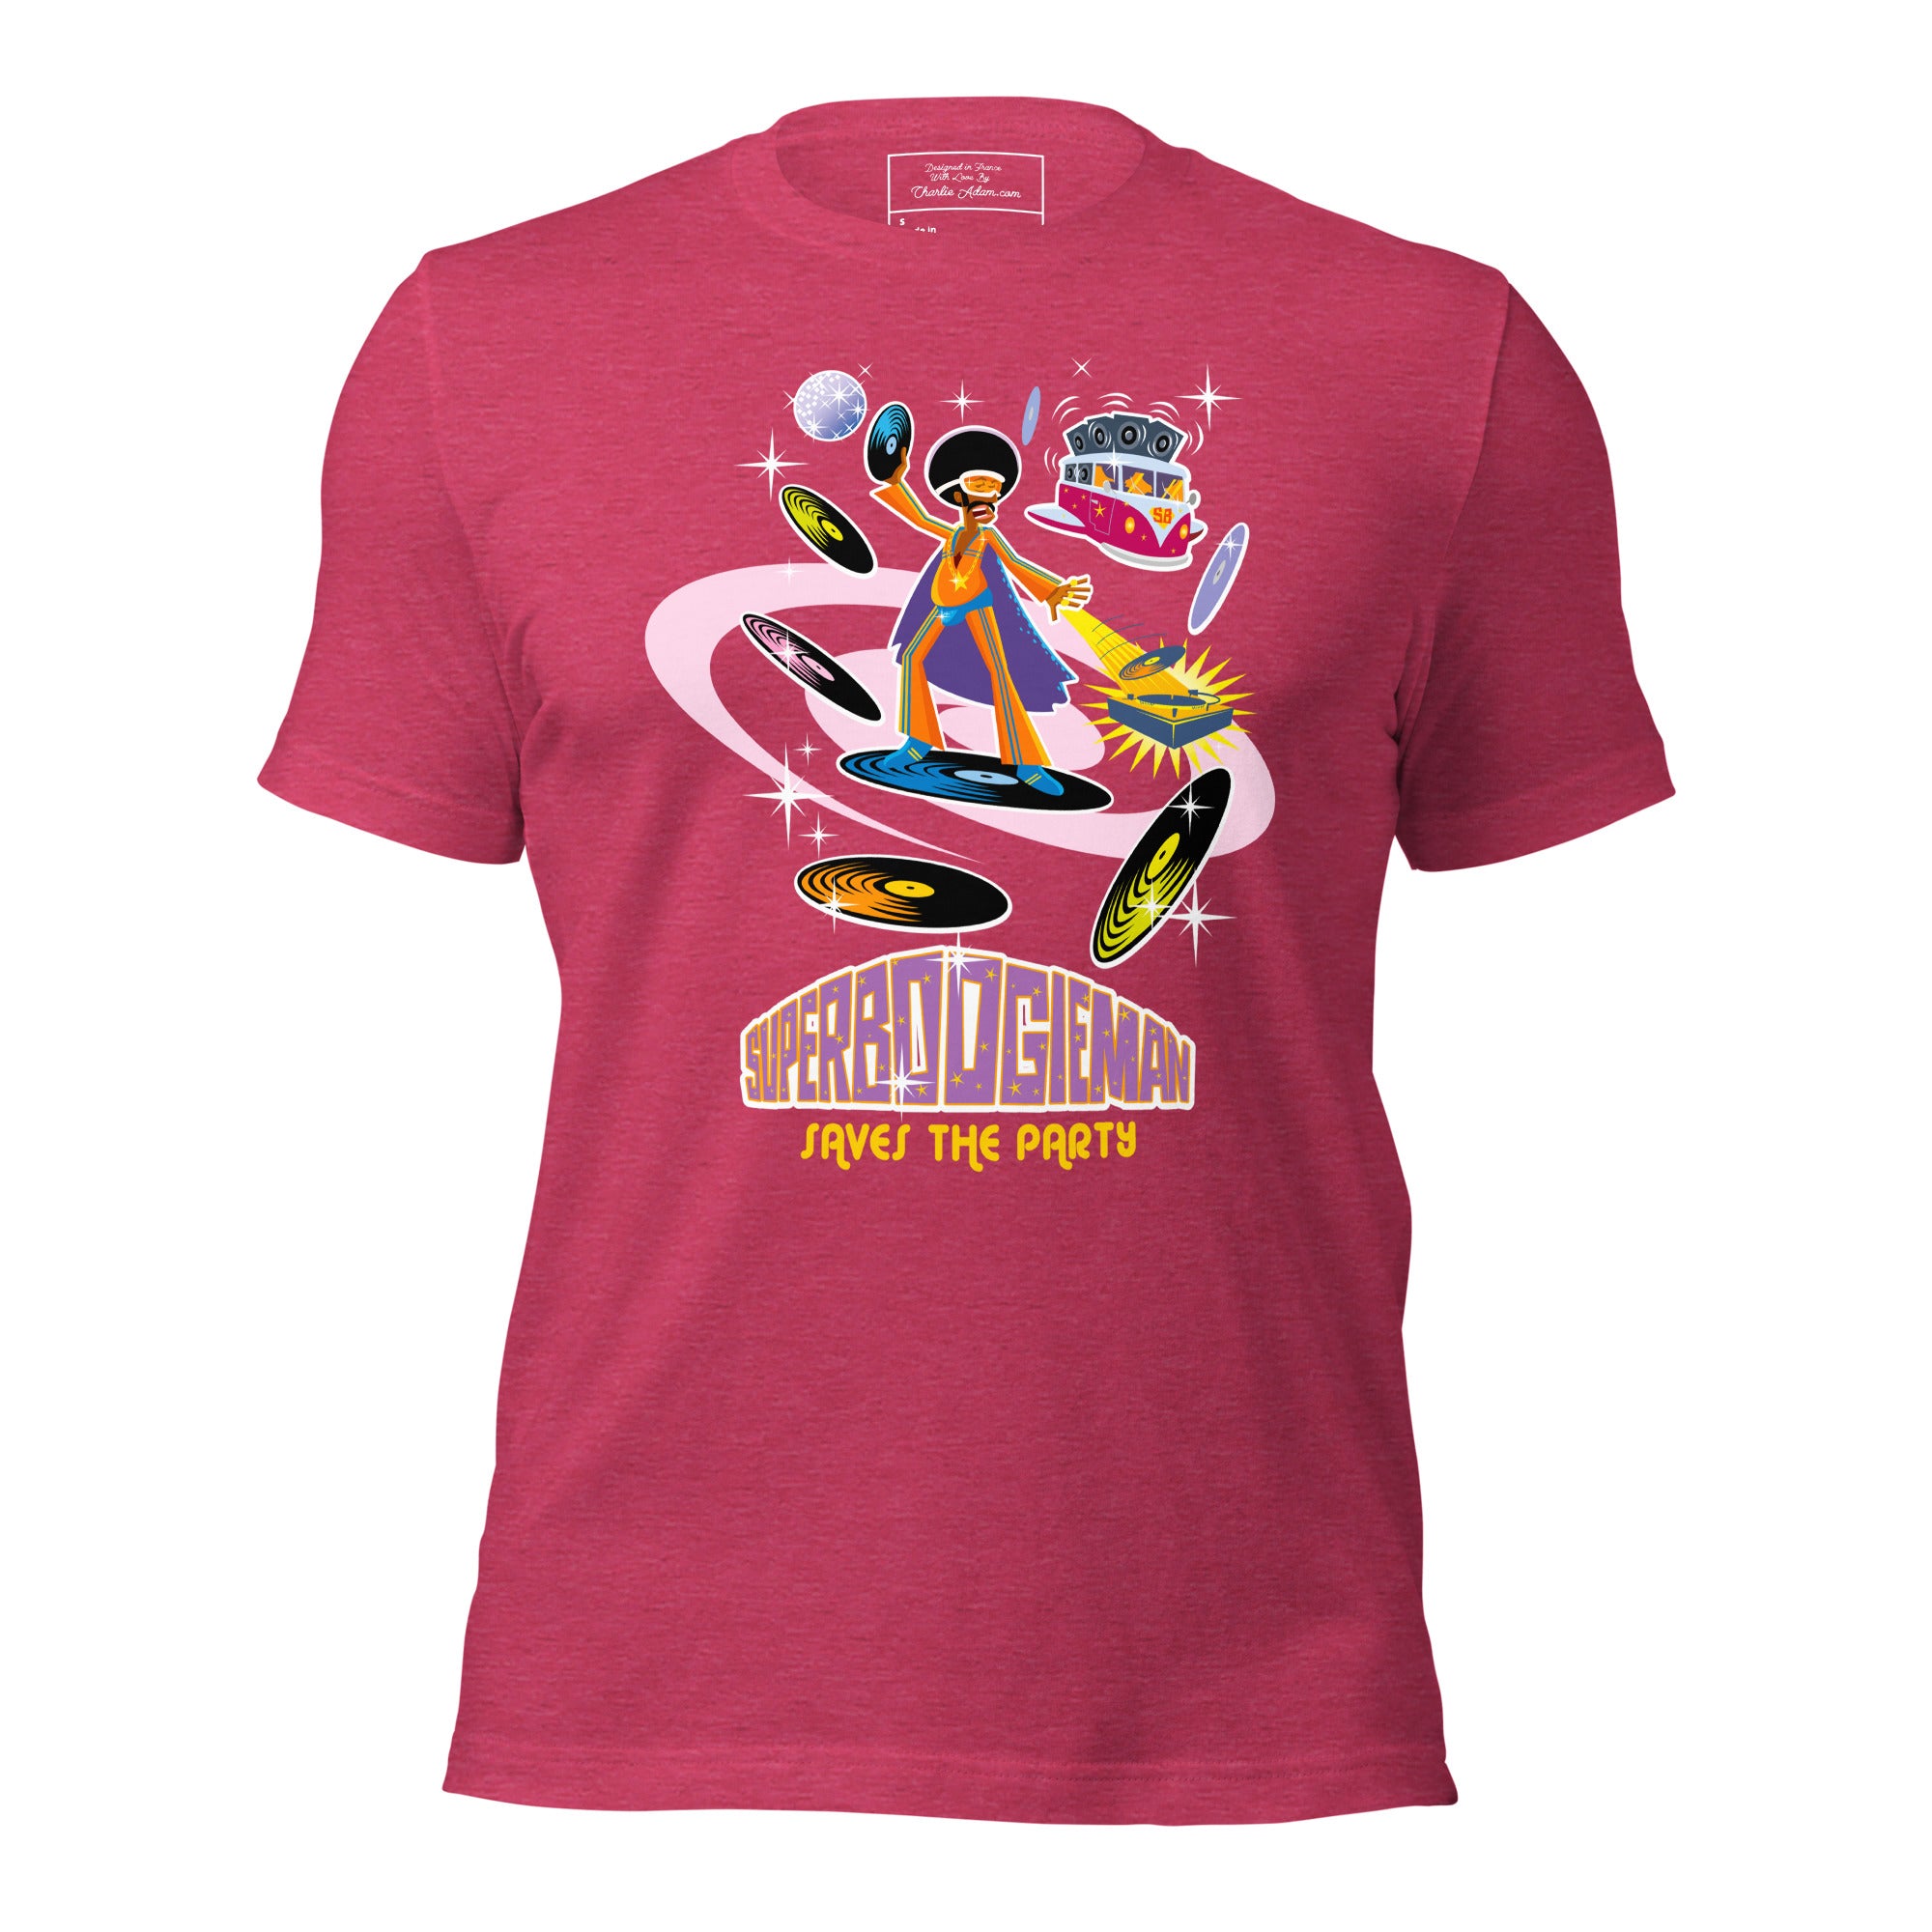 T-shirt en coton unisexe Superboogieman saves the party sur couleurs chinées vives